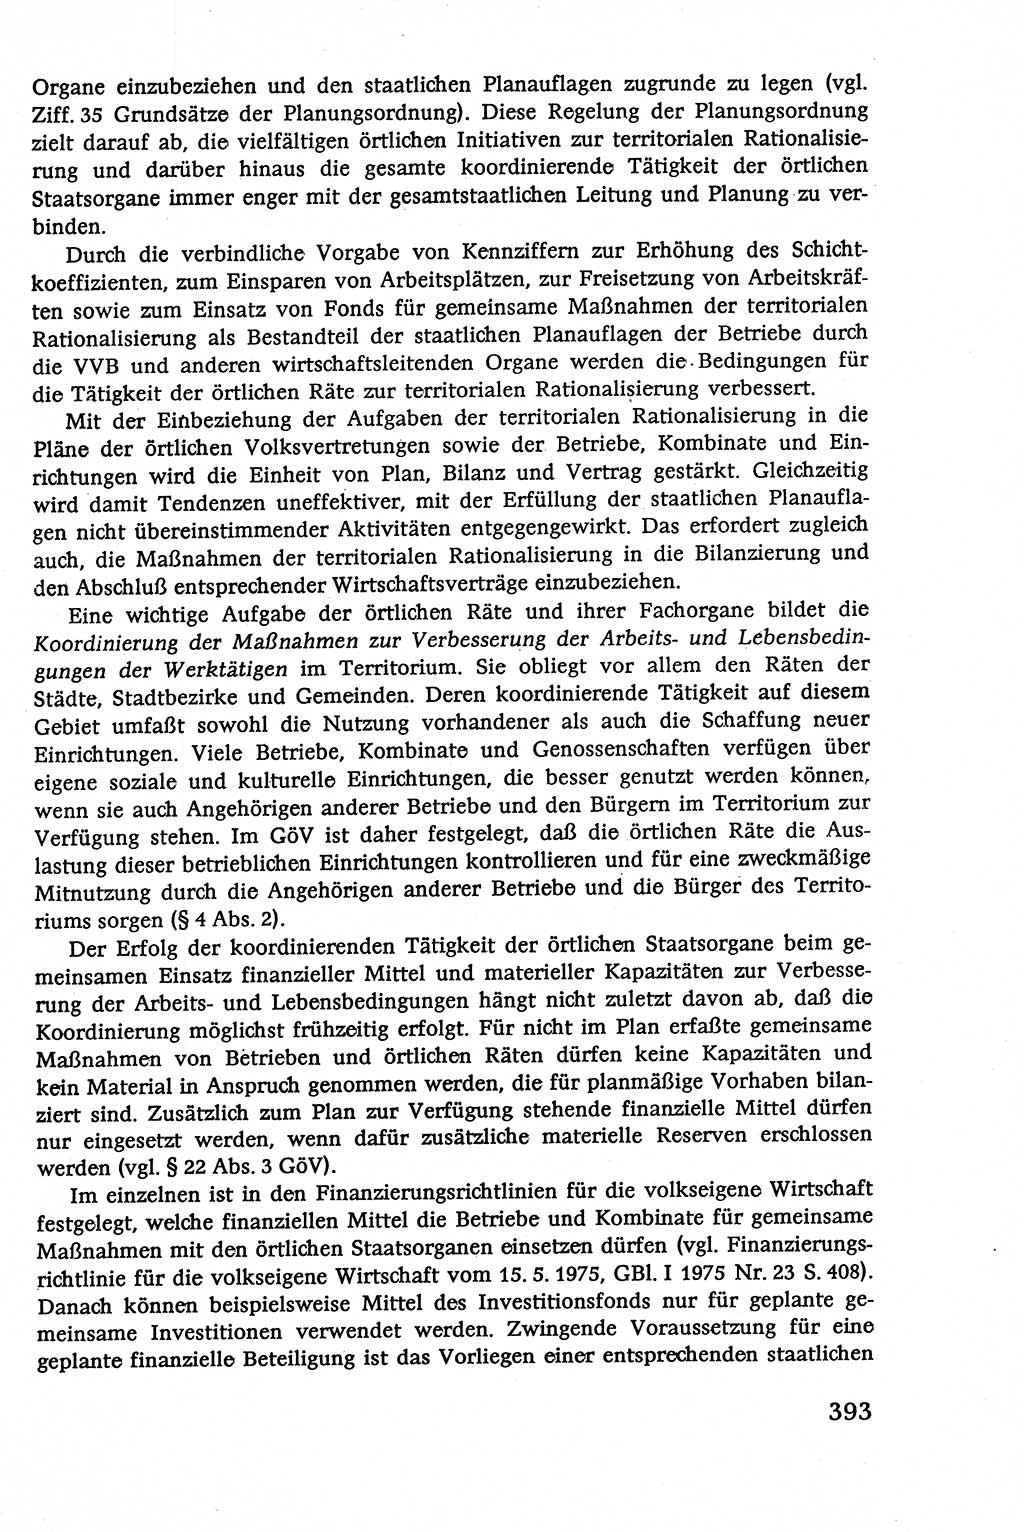 Verwaltungsrecht [Deutsche Demokratische Republik (DDR)], Lehrbuch 1979, Seite 393 (Verw.-R. DDR Lb. 1979, S. 393)